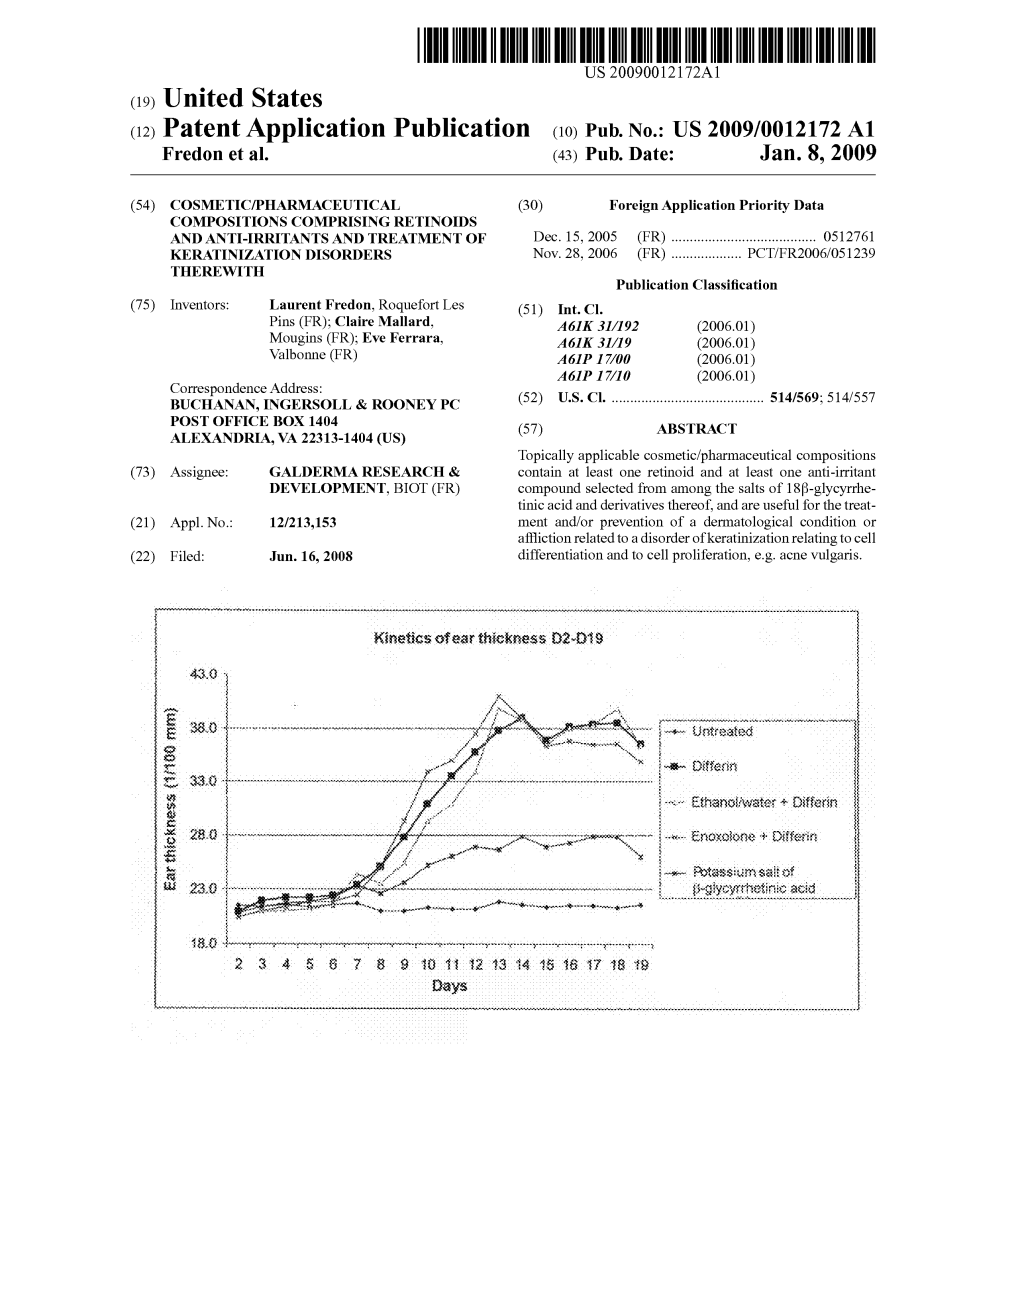 (12) Patent Application Publication (10) Pub. No.: US 2009/0012172 A1 Fredon Et Al